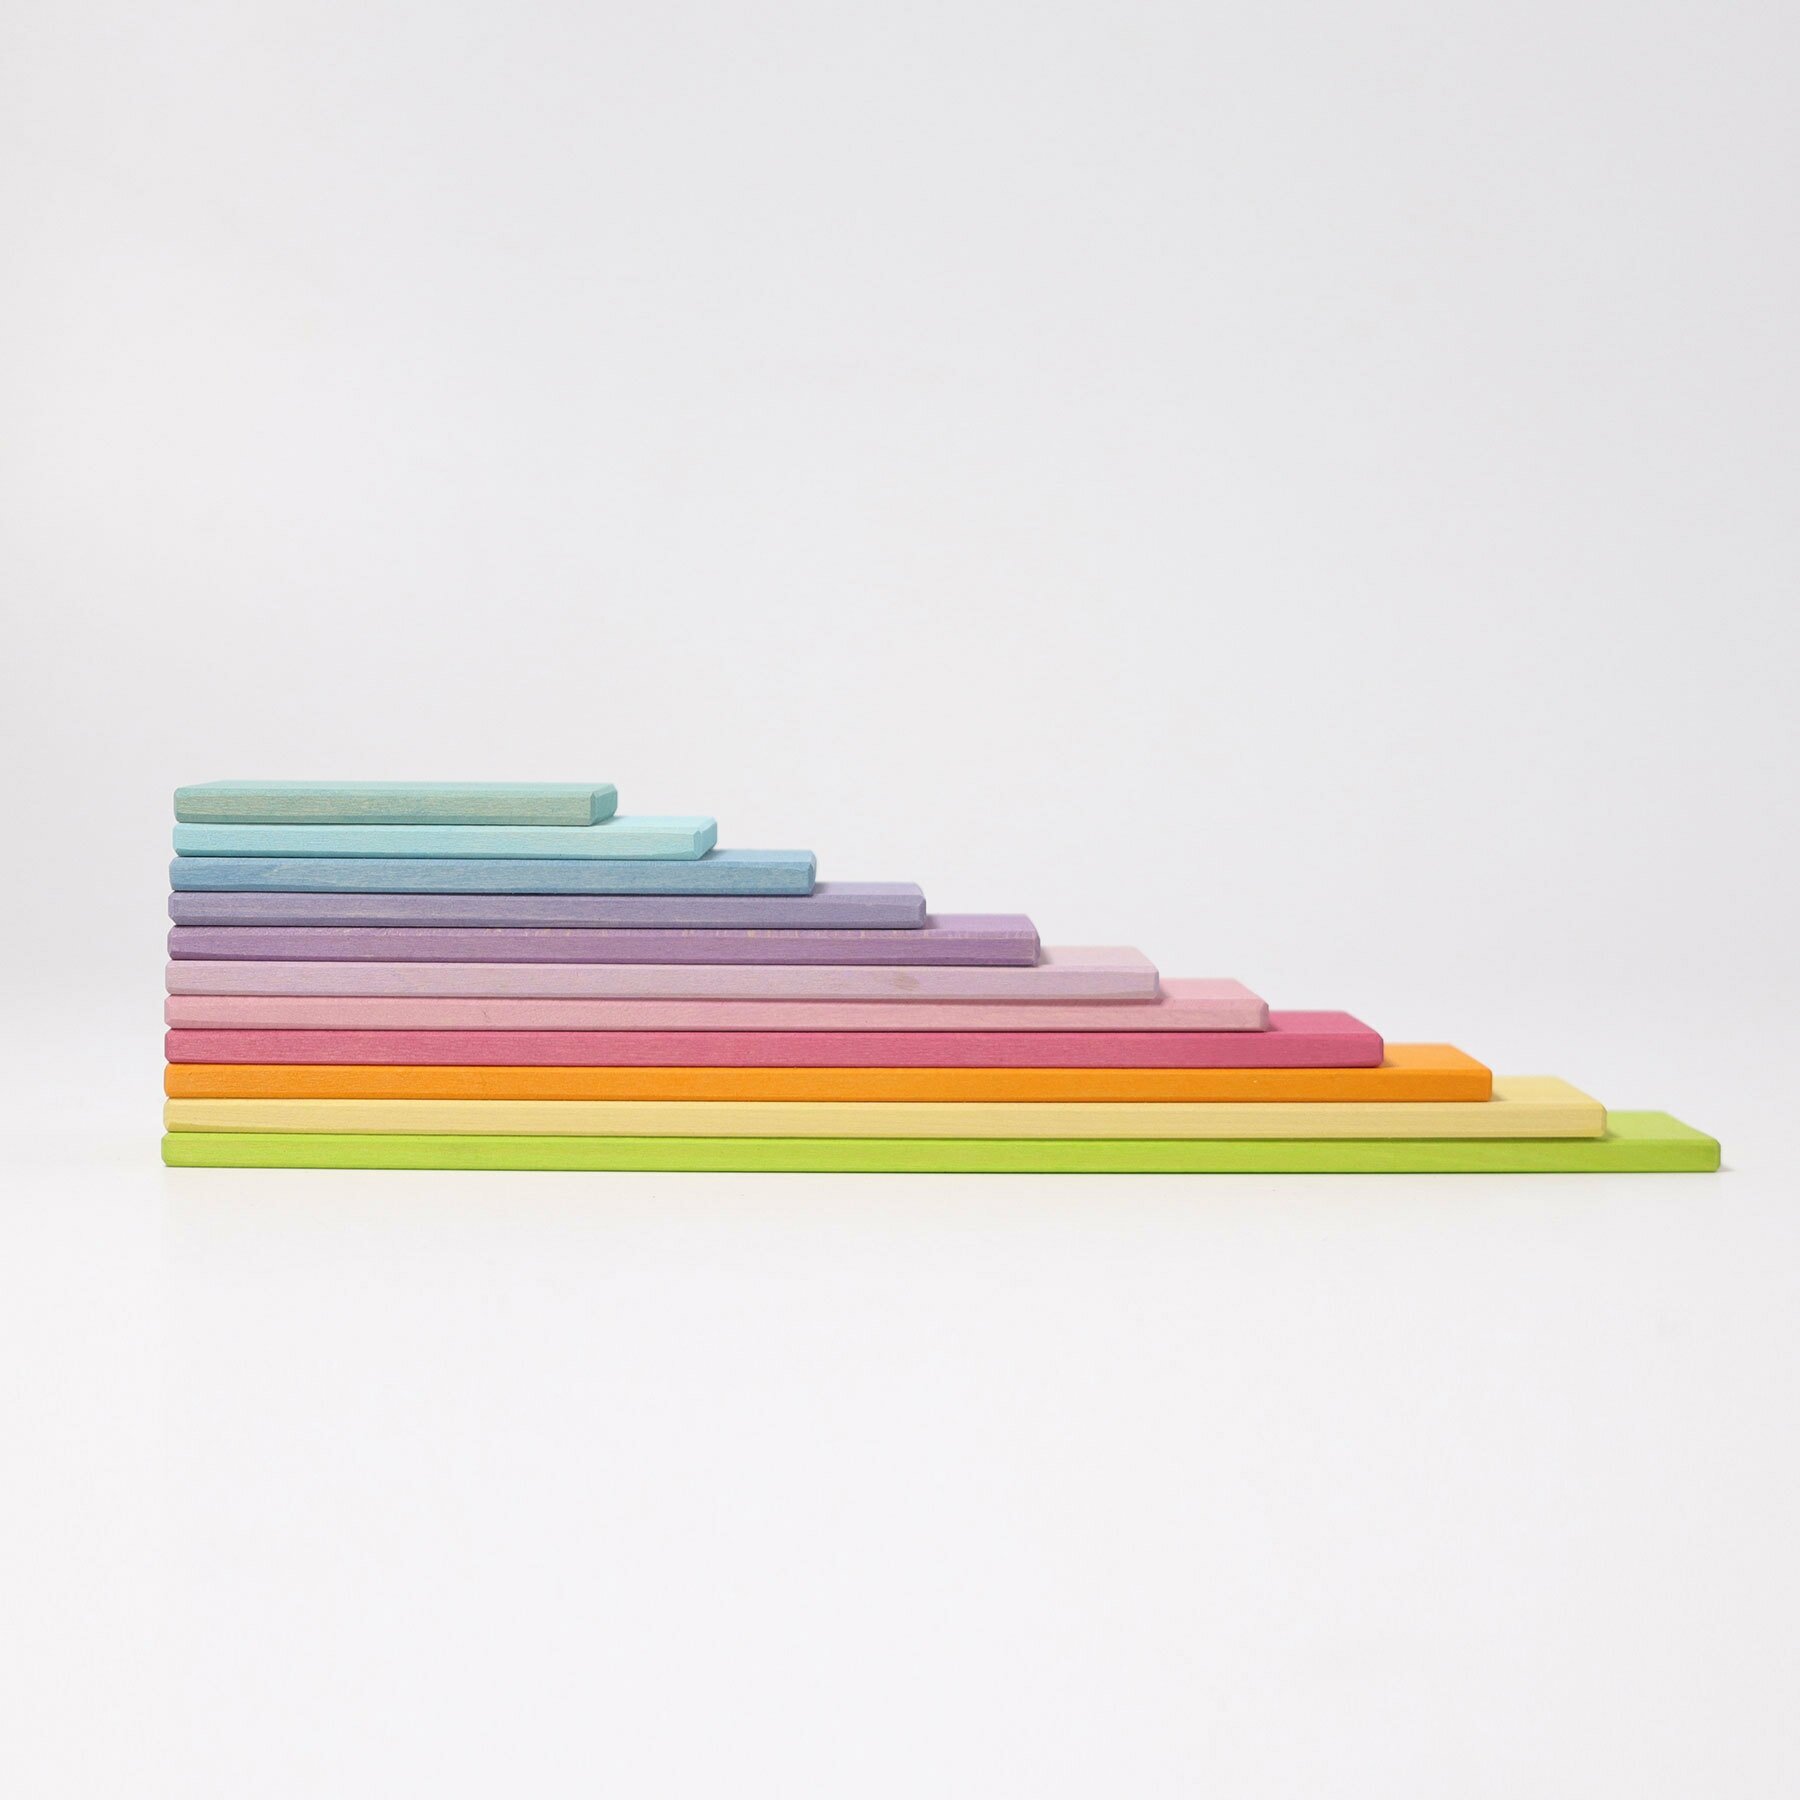 Деревянный игровой набор "Дощечки к радуге" цвета пастель, 12 деталей